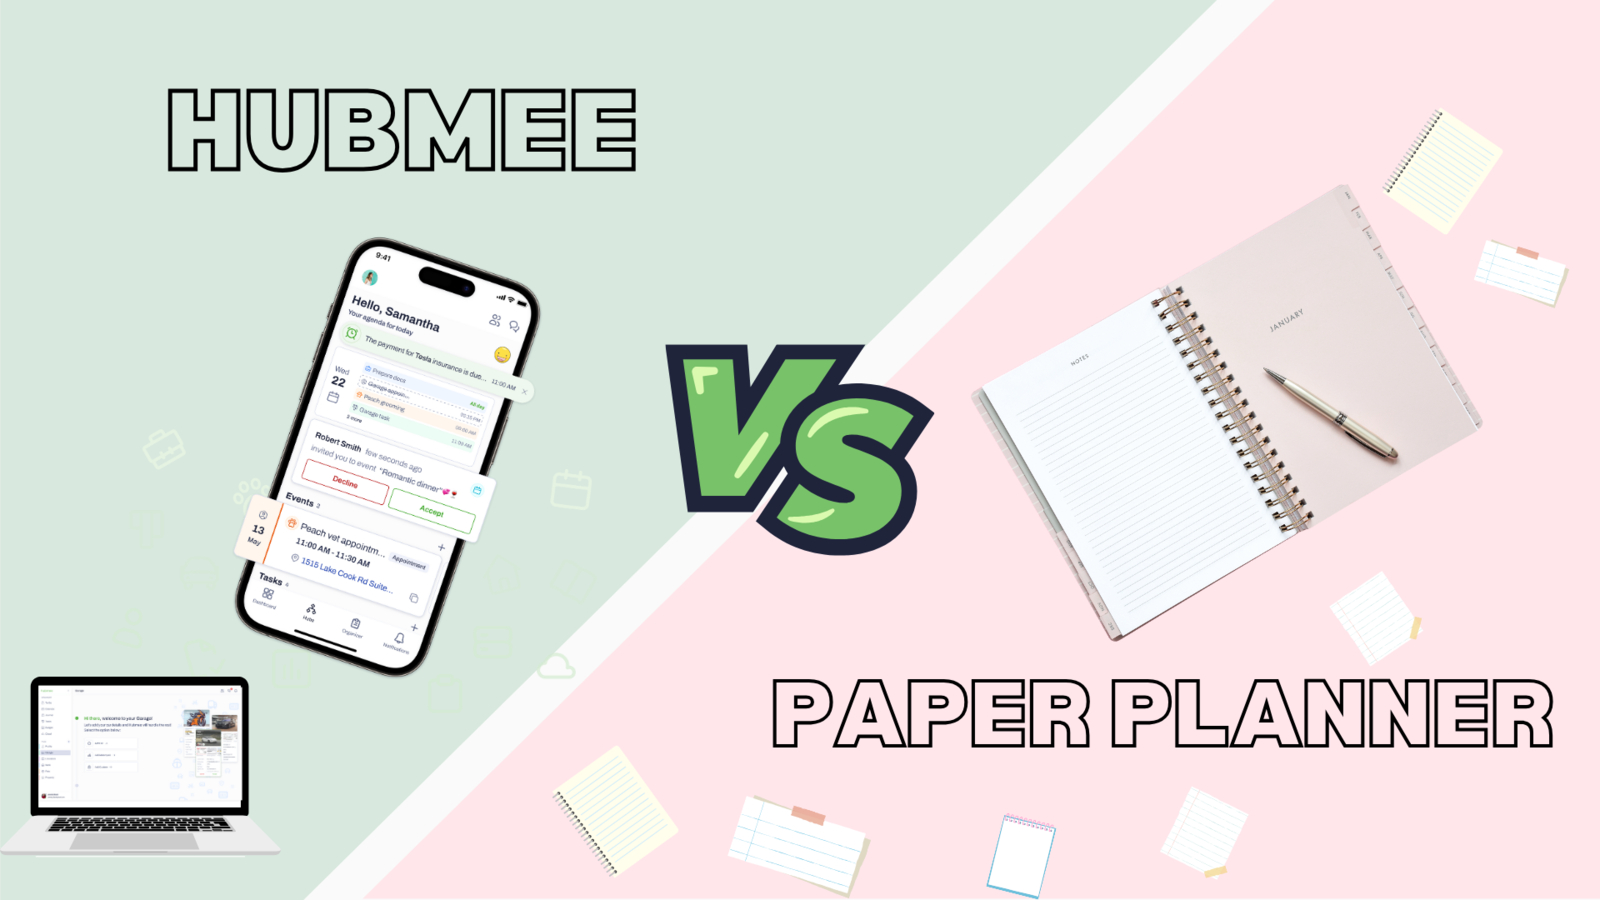 Hubmee vs. Paper Planner: A Digital Revolution